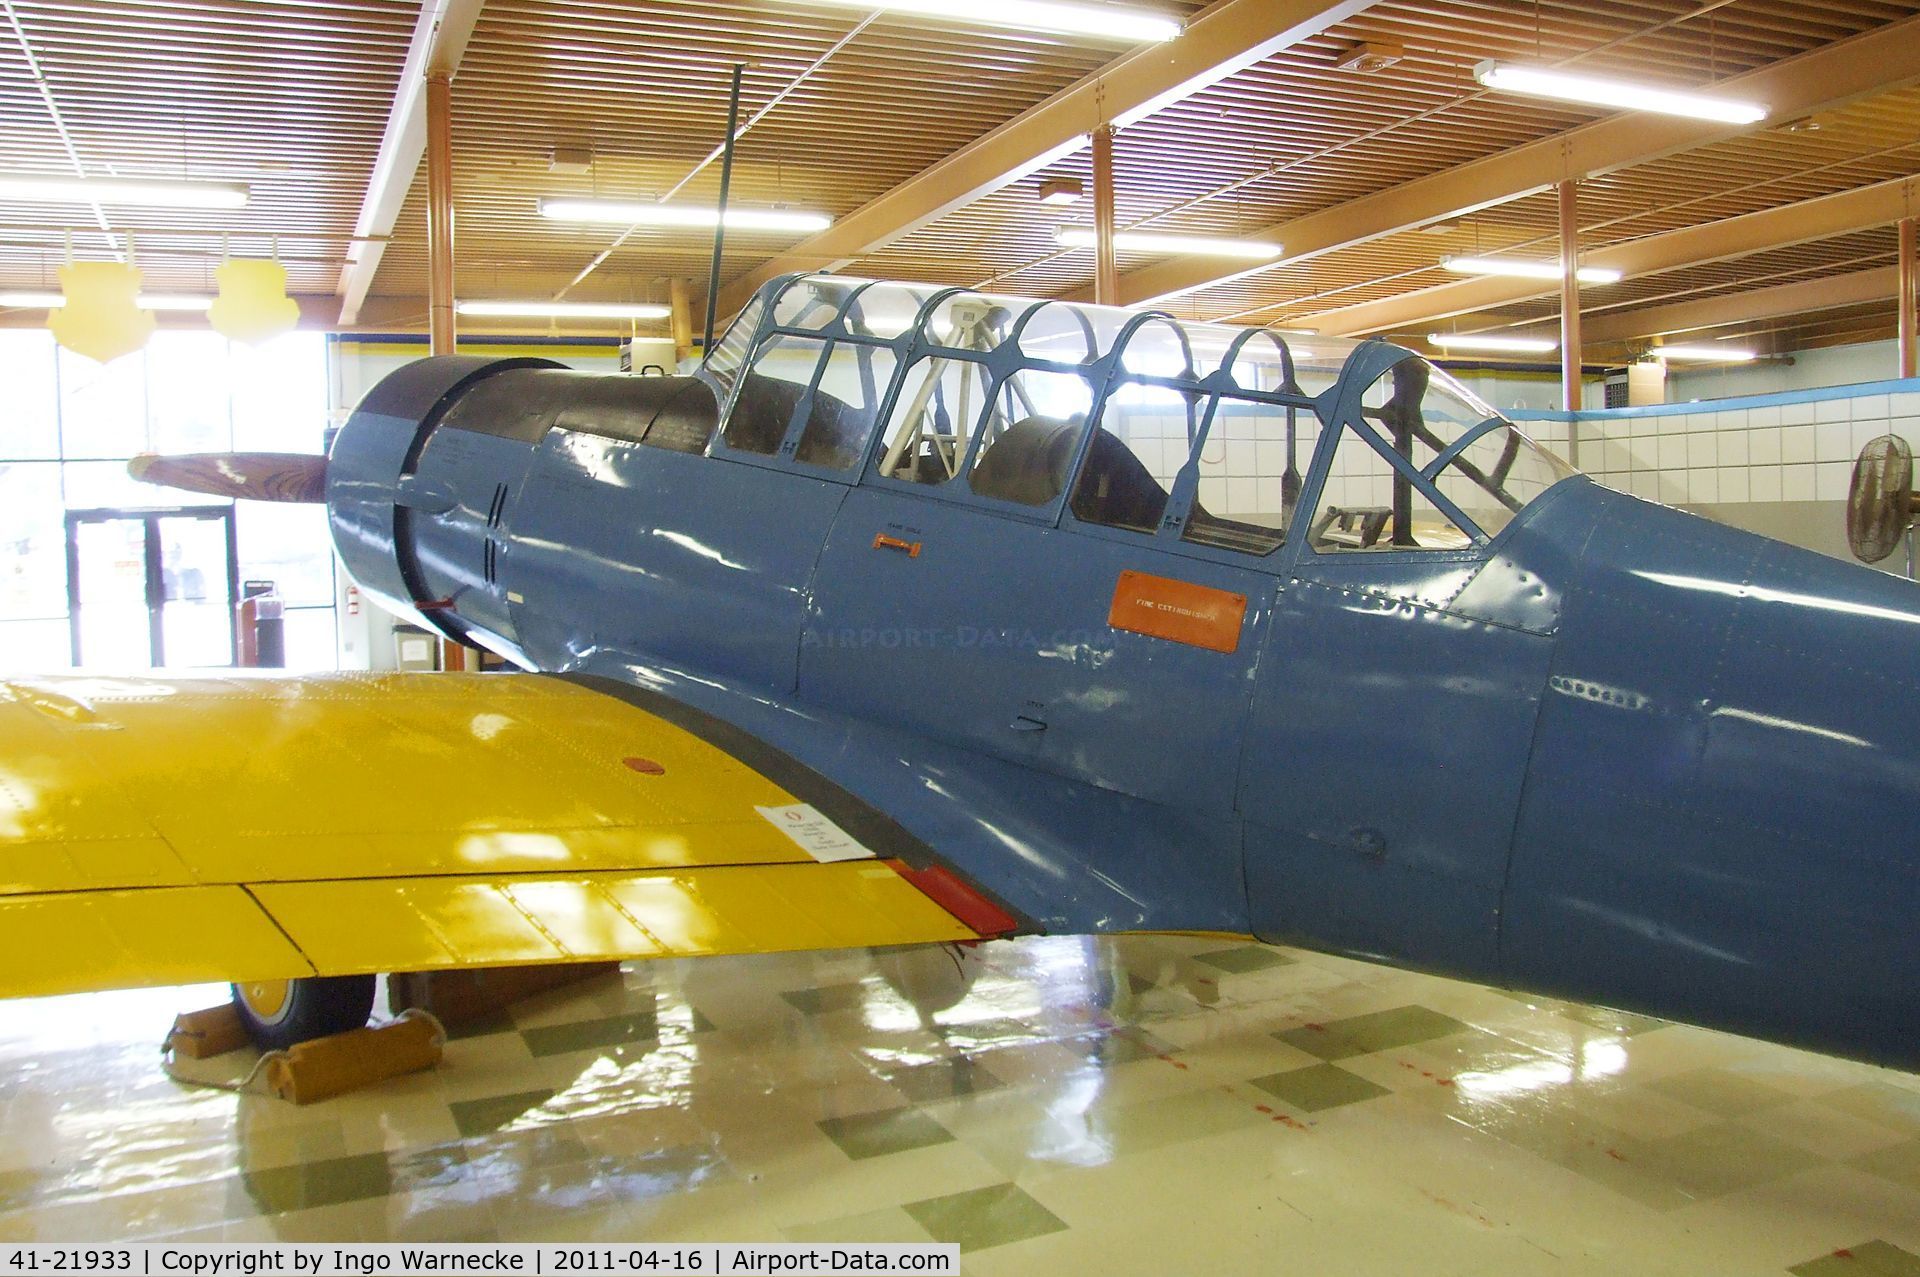 41-21933, Vultee BT-13 Valiant C/N 74-5772, Vultee BT-13 Valiant at the Travis Air Museum, Travis AFB Fairfield CA